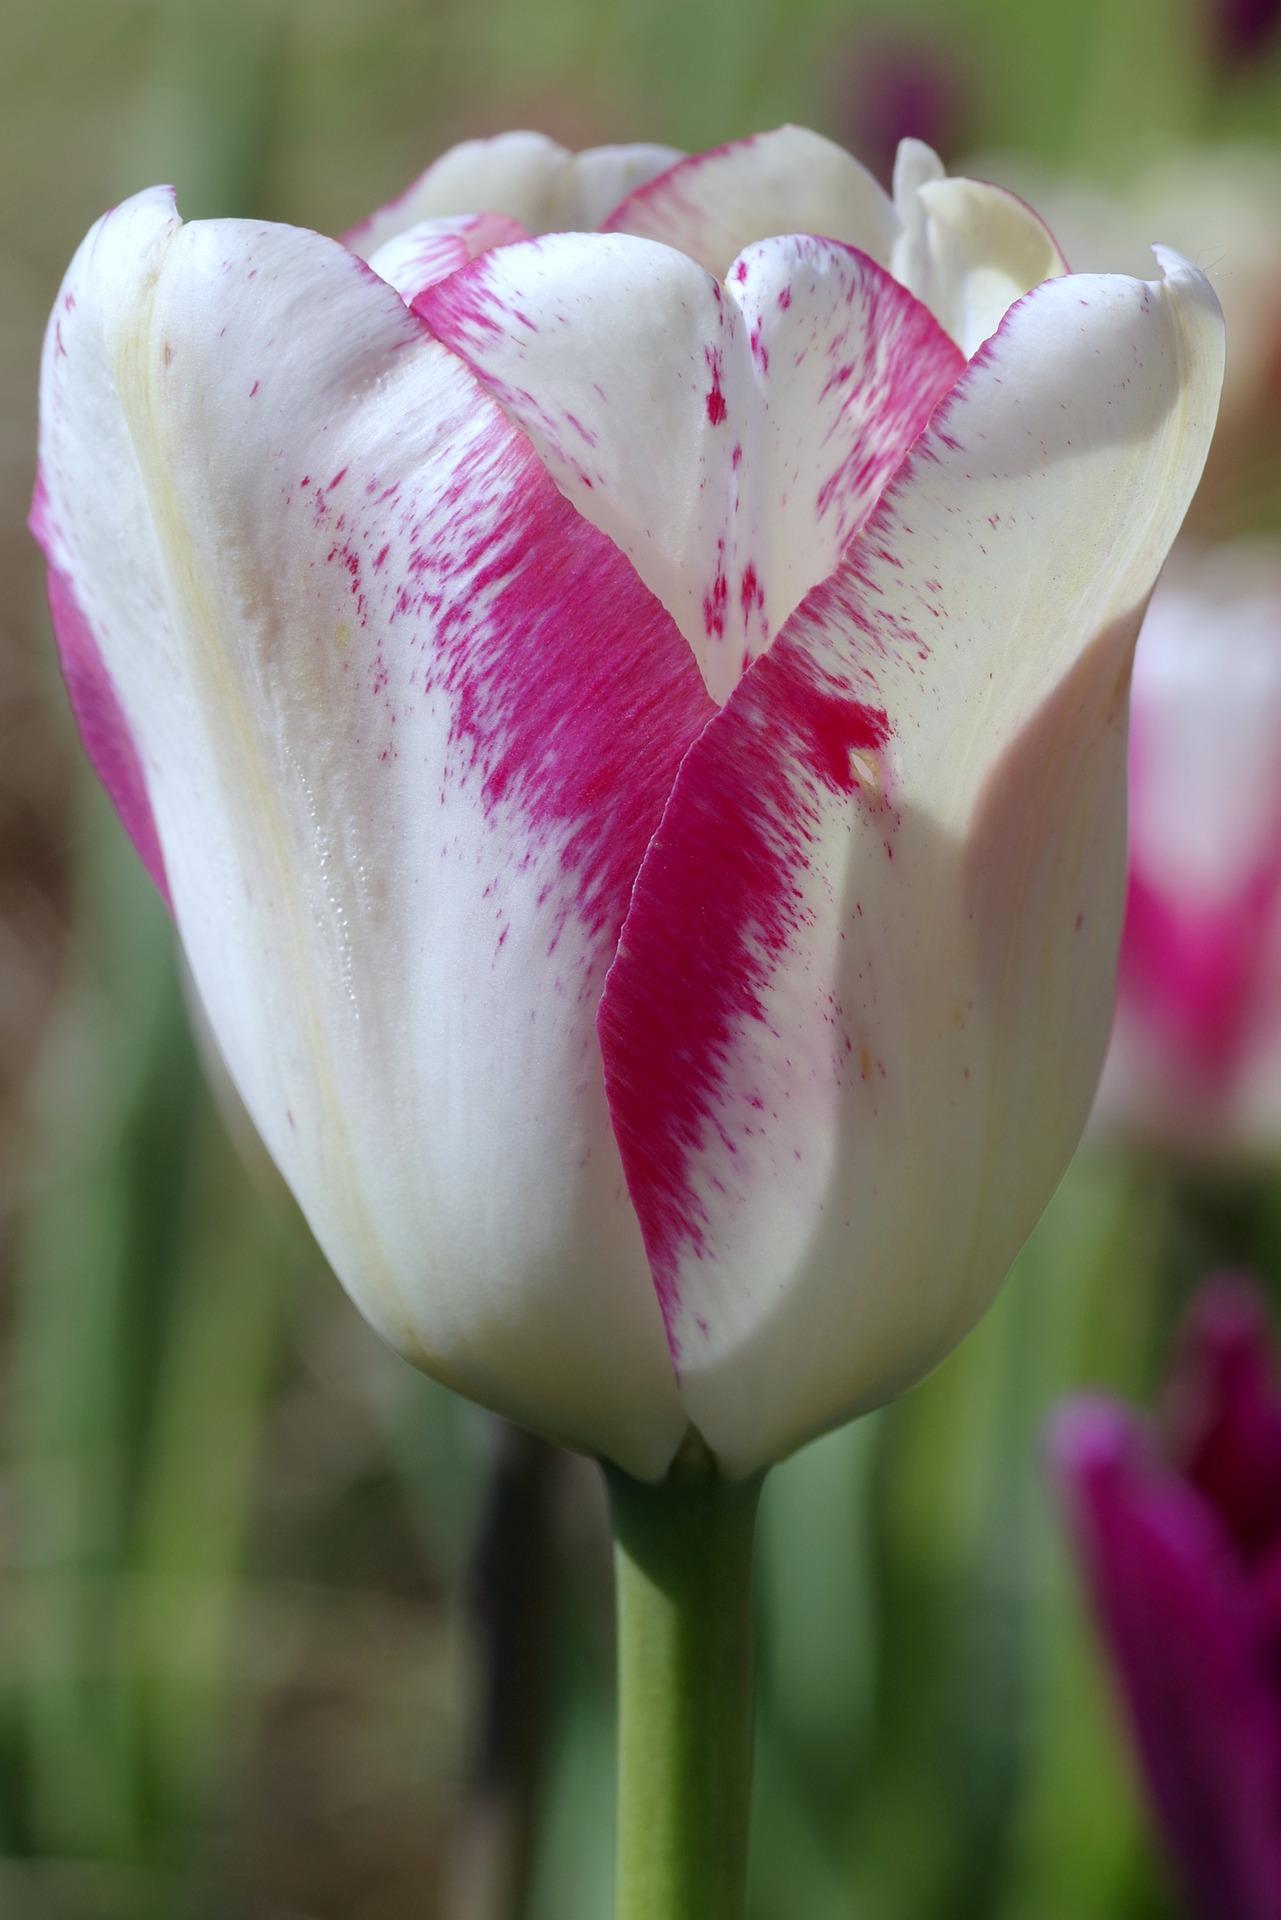 Tulip Triumph 'Affaire' - Tulip from Leo Berbee Bulb Company